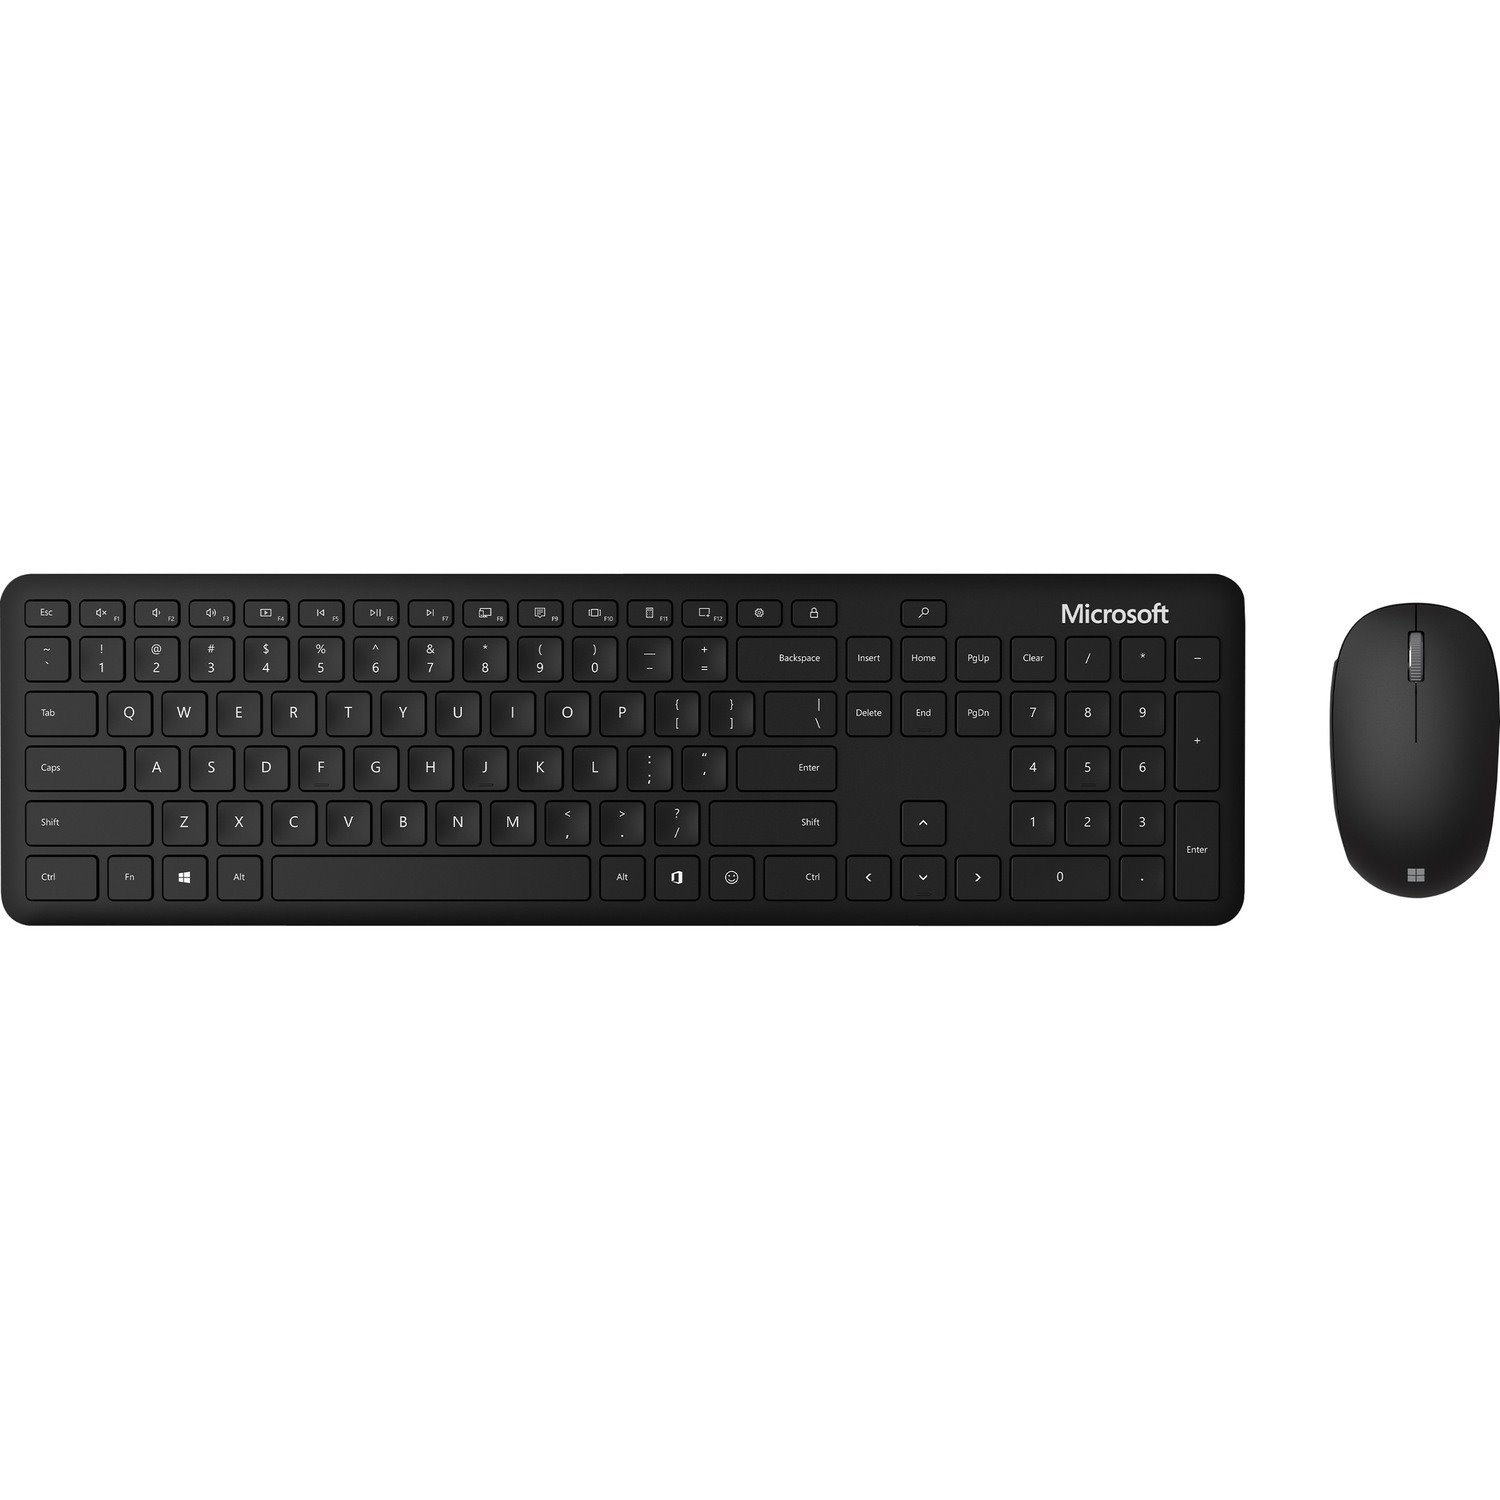 Microsoft Keyboard & Mouse